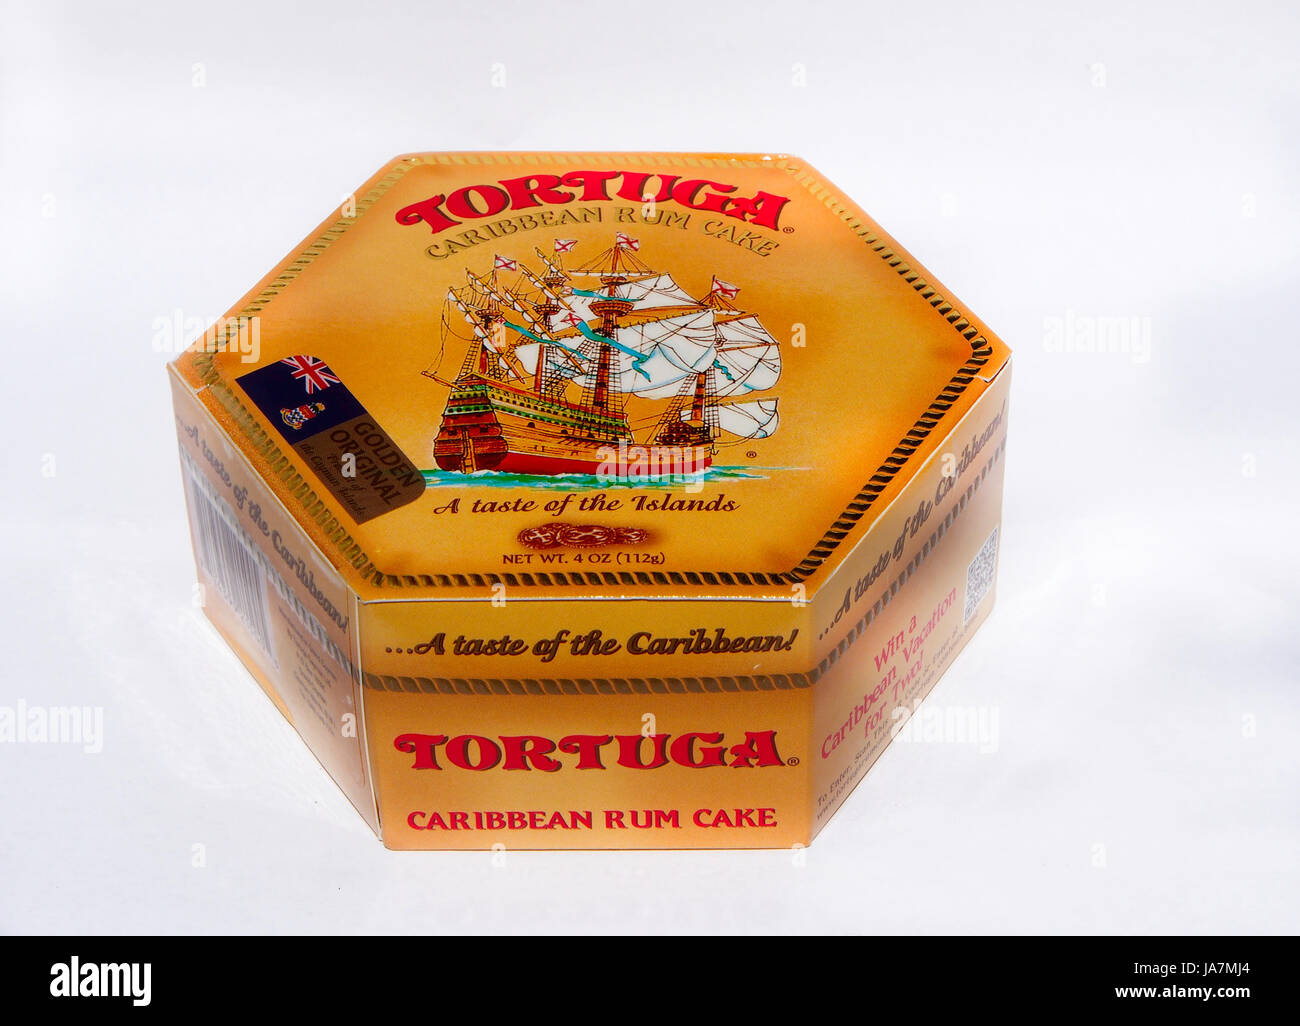 L'emballage de Tortuga au rhum des Caraïbes Banque D'Images